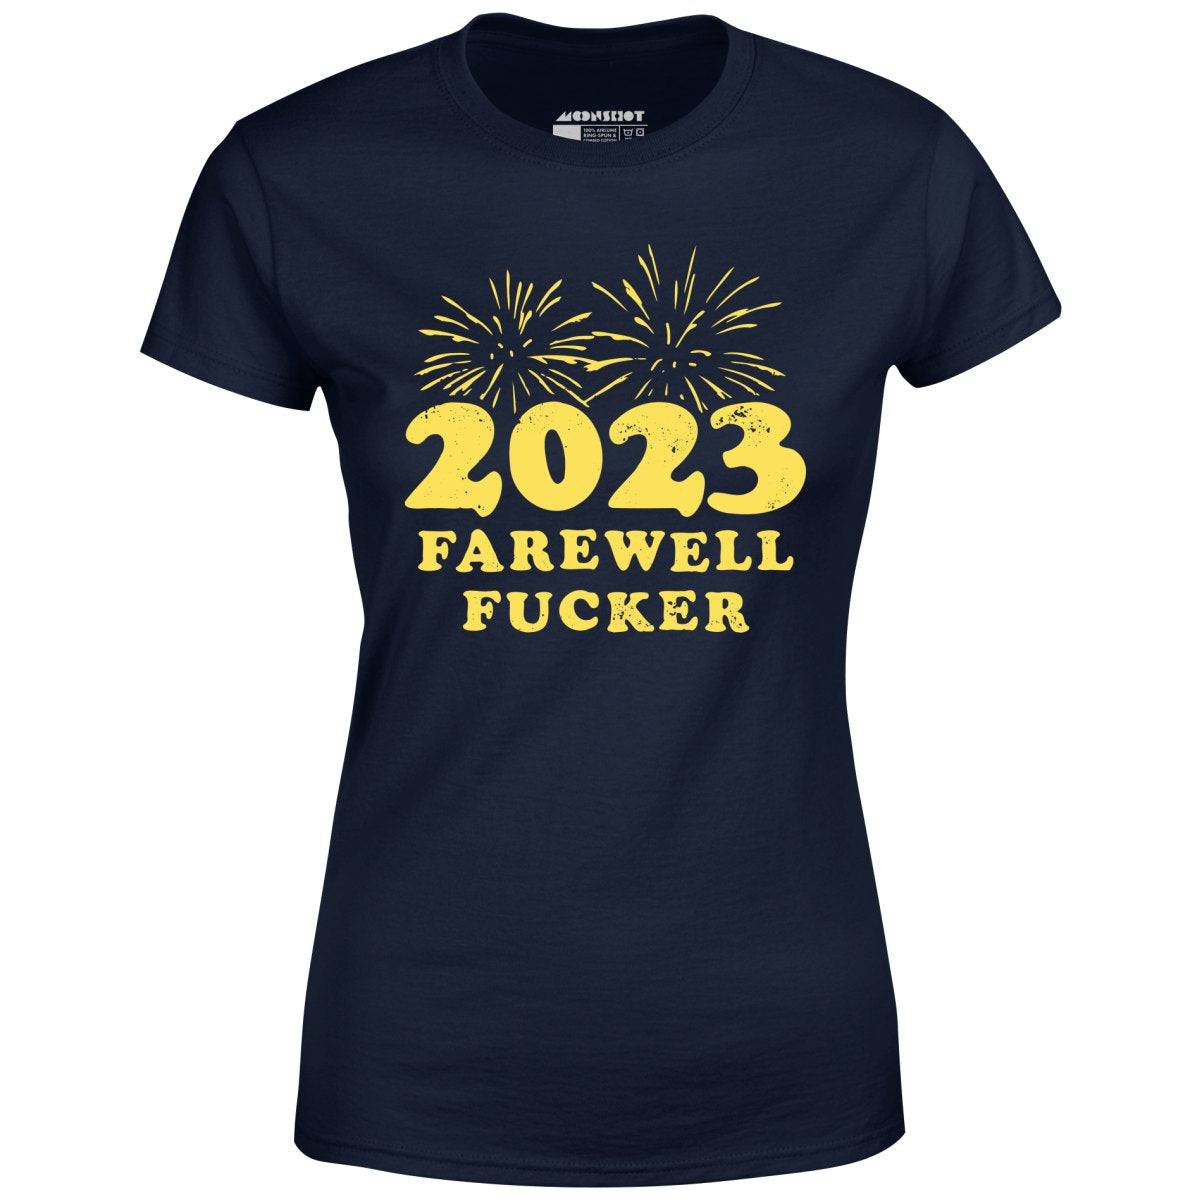 2023 Farewell Fucker - Women's T-Shirt